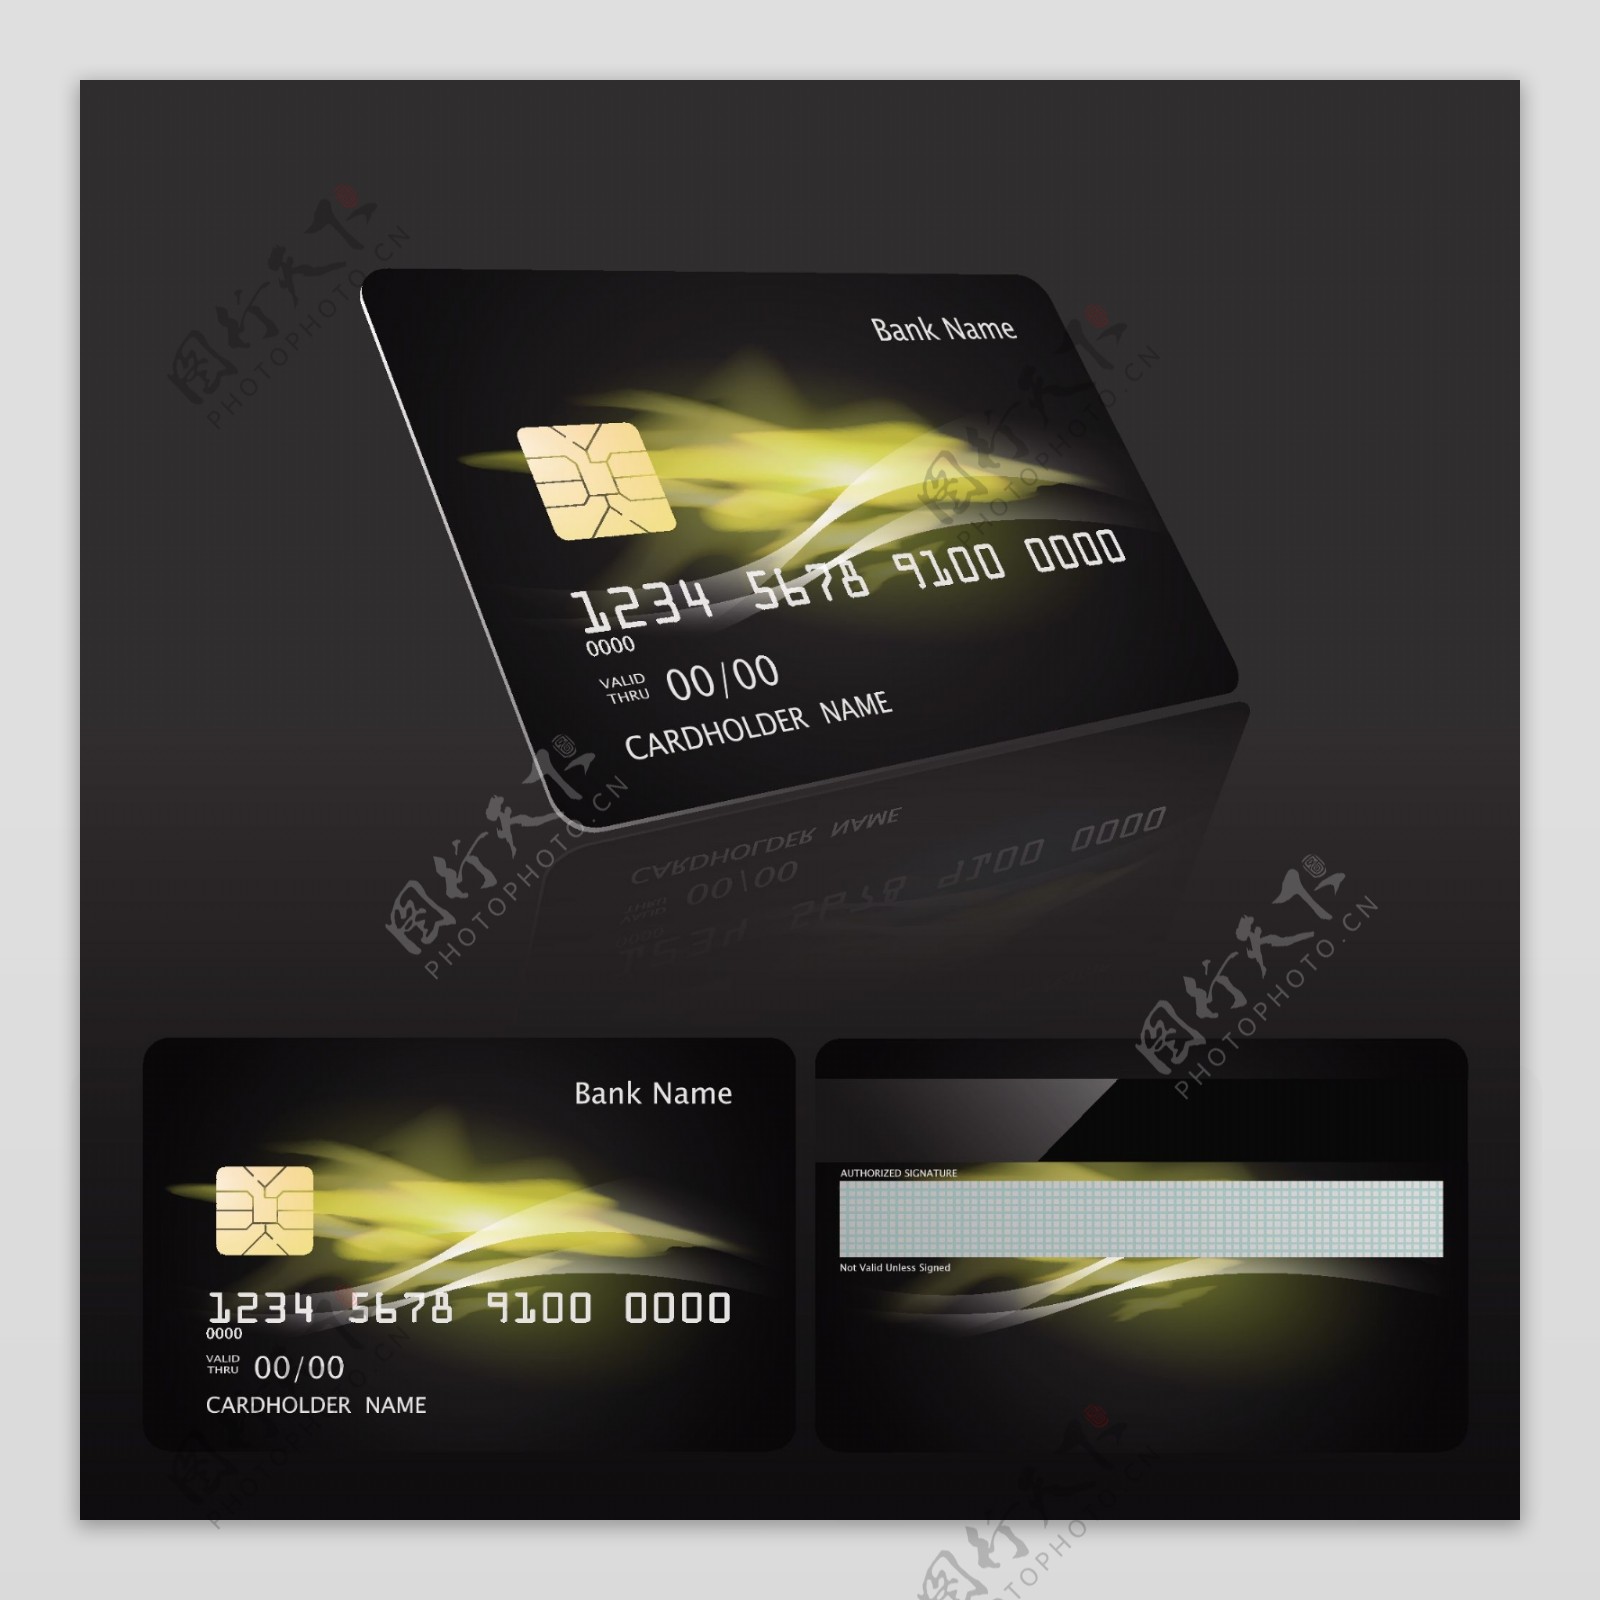 黑暗风格银行卡模板矢量素材下载